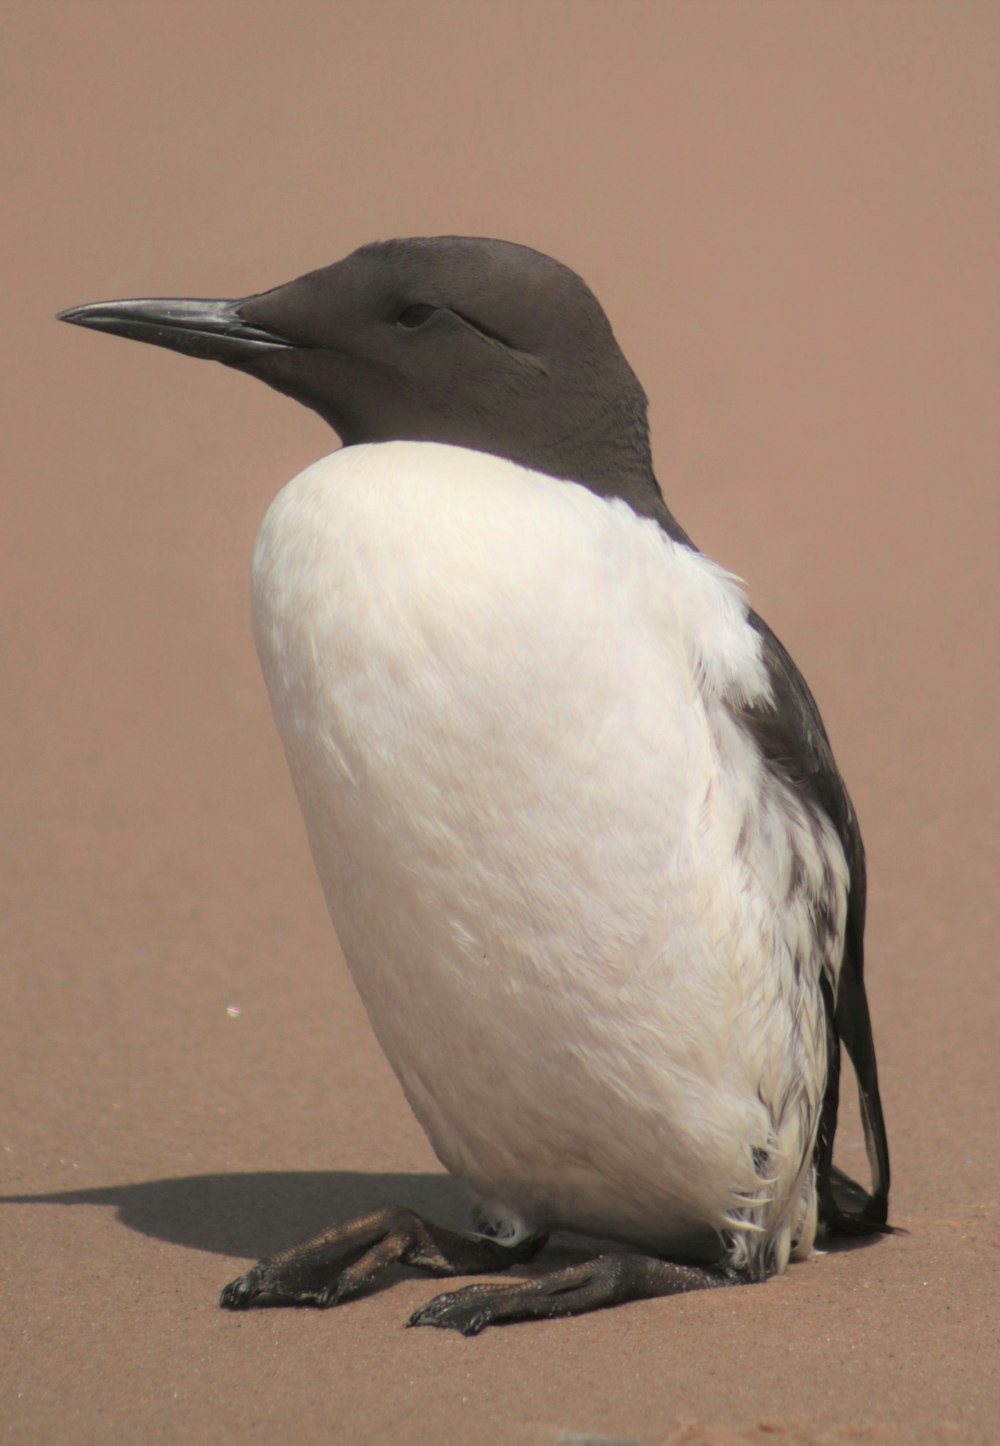 Un oiseau noir et blanc assis sur le sable